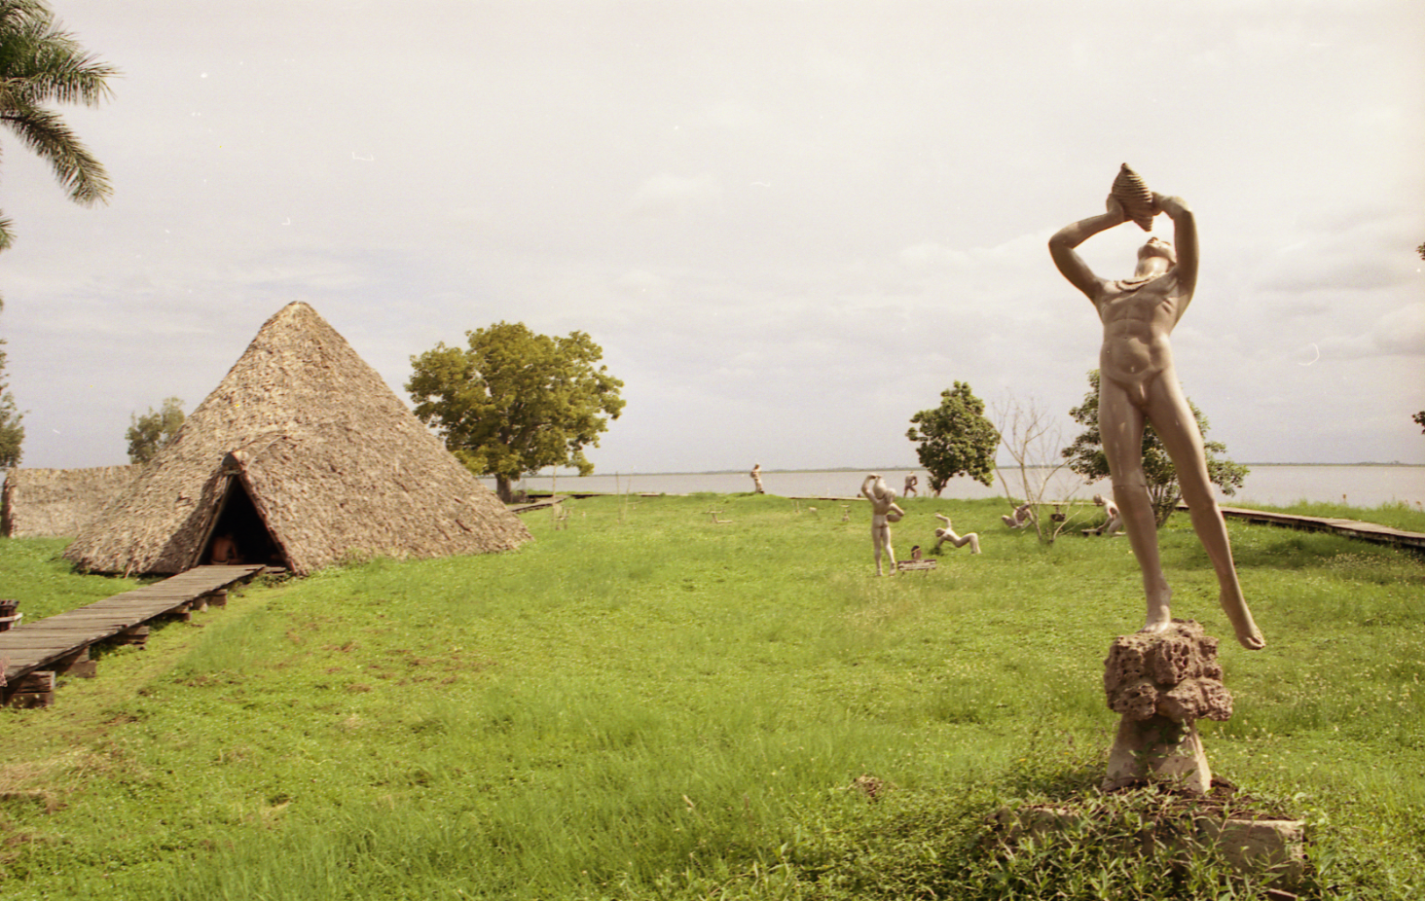 Воссозданная индейская деревня Гуама (Guama), расположенная на острове в центре
        большого озера, расположенного на южном побережье острова Куба Скульптуры индейцев и хижины, выполненные в
        натуральную величину, позволяют познакомиться с историей и бытом коренных жителей Кубы. Существует легенда, что
        жившие здесь индейцы утопили в озере свои ценности для того, чтобы они не достались конкистадорам. Индейский
        касик Гуама в течение 11 лет (с 1522 по 1533 г.) оказывал сопротивление испанцам, свершая набеги в города и
        сжигая испанские усадьбы.
